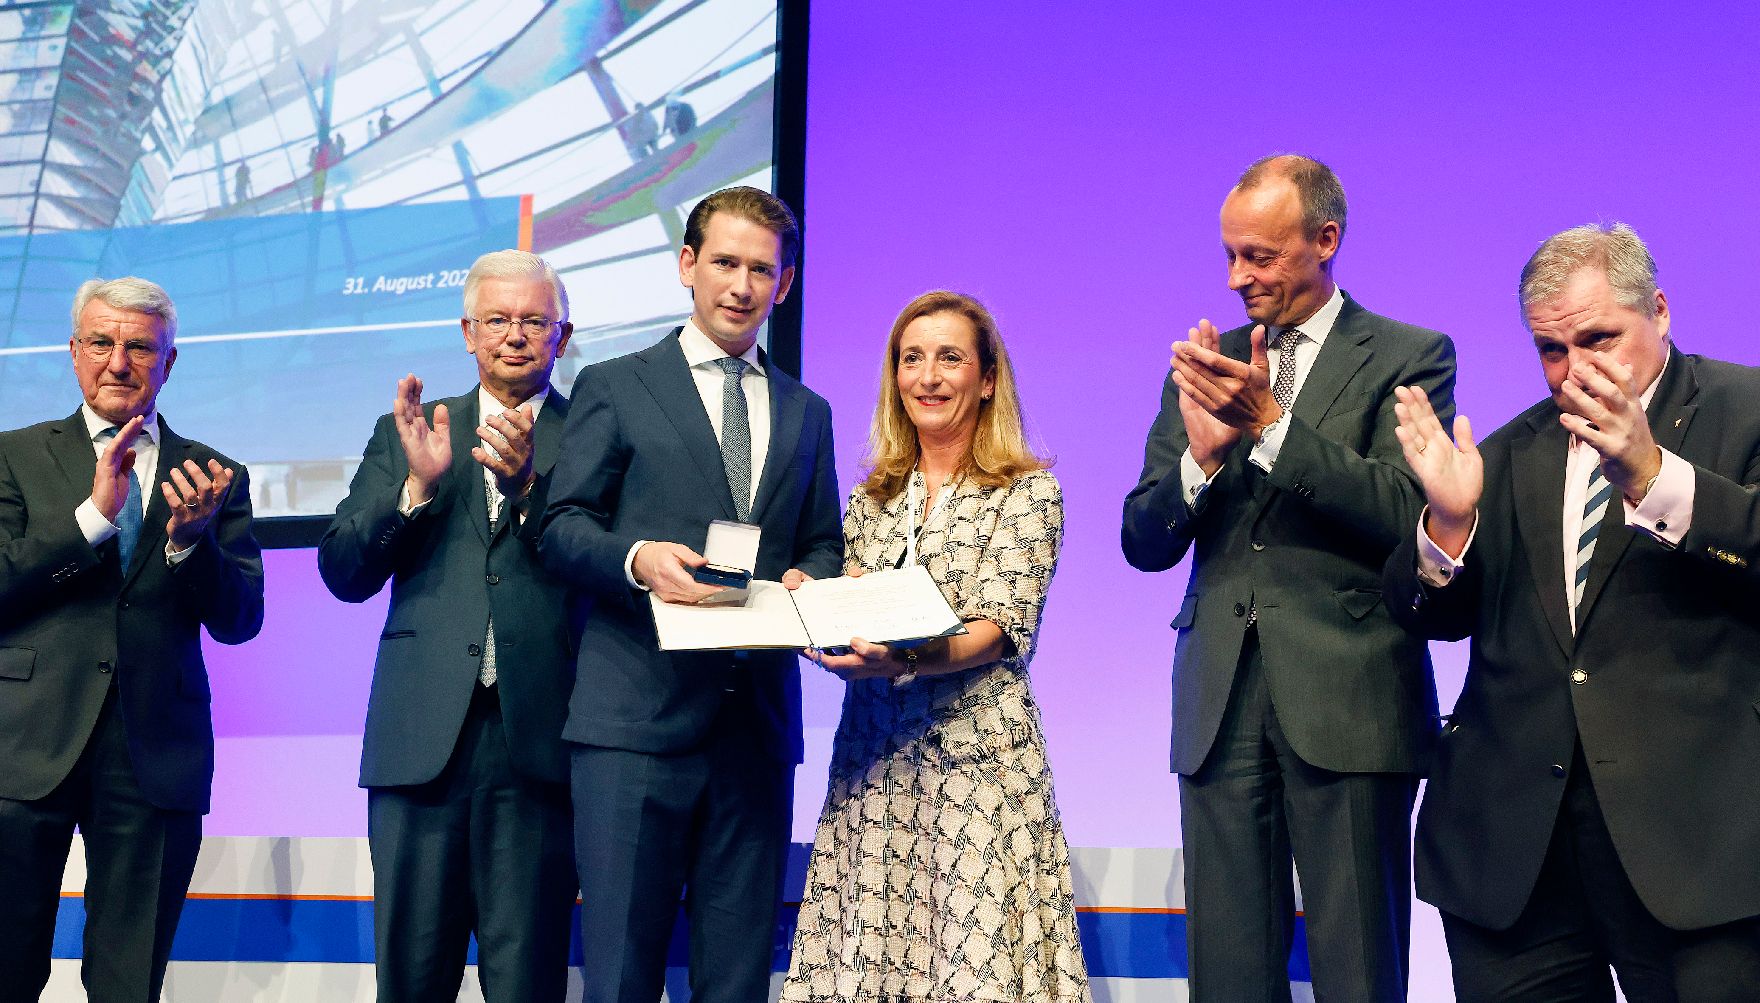 Am 31. August 2021 nahm Bundeskanzler Sebastian Kurz (3.v.l.) im Rahmen seines Arbeitsbesuchs in Berlin an der Verleihung der Ludwig-Erhard-Gedenkmünze vom Wirtschaftsrat Deutschland teil.